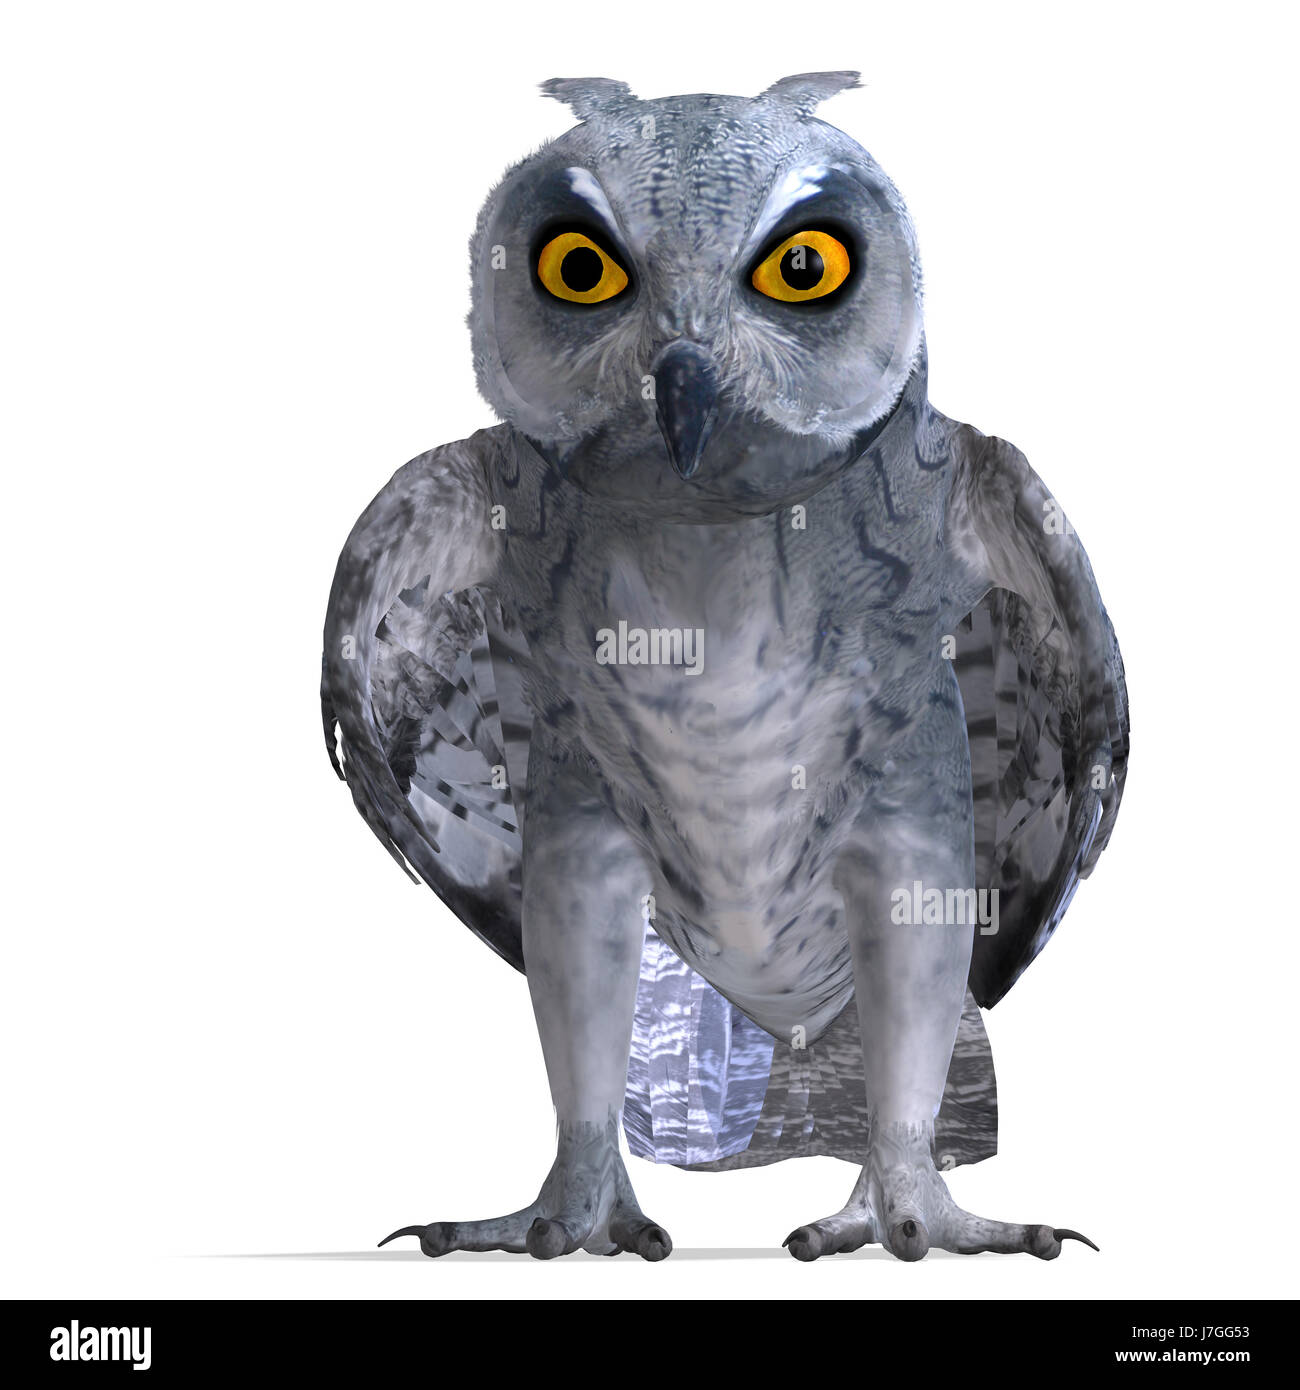 Animaux oiseaux de nuit nuit bec illustration chouette griffe twitter chirp mis quill Banque D'Images